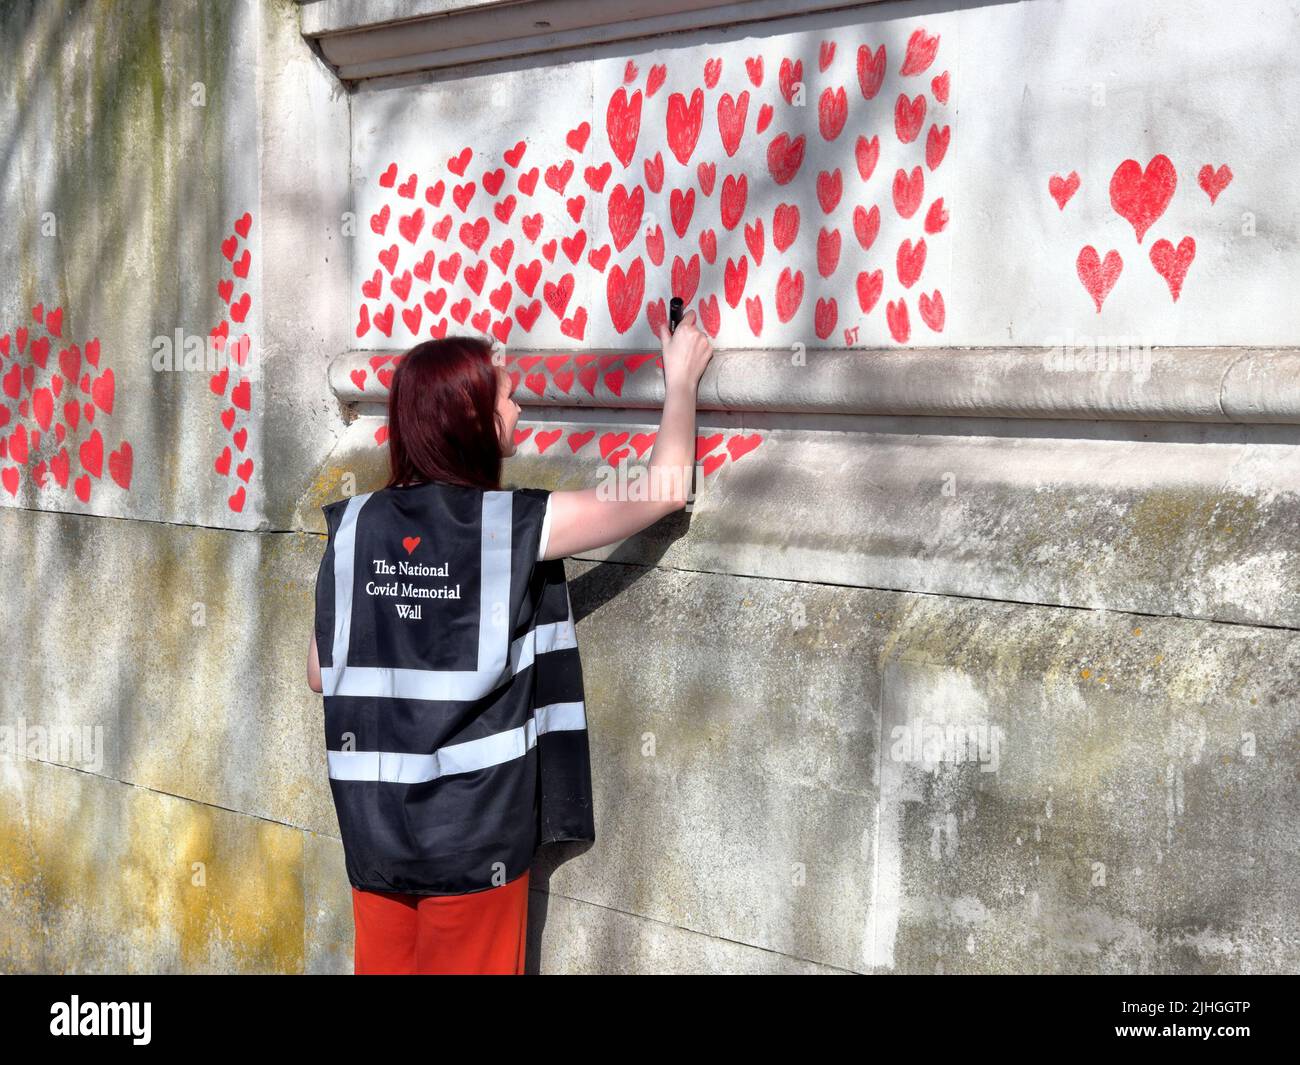 Londres, Royaume-Uni - 30 mars 2021 : le mur commémoratif national des Covid, des volontaires peignant 150 000 coeurs rouges pour commémorer les décès de Covid-19 Banque D'Images